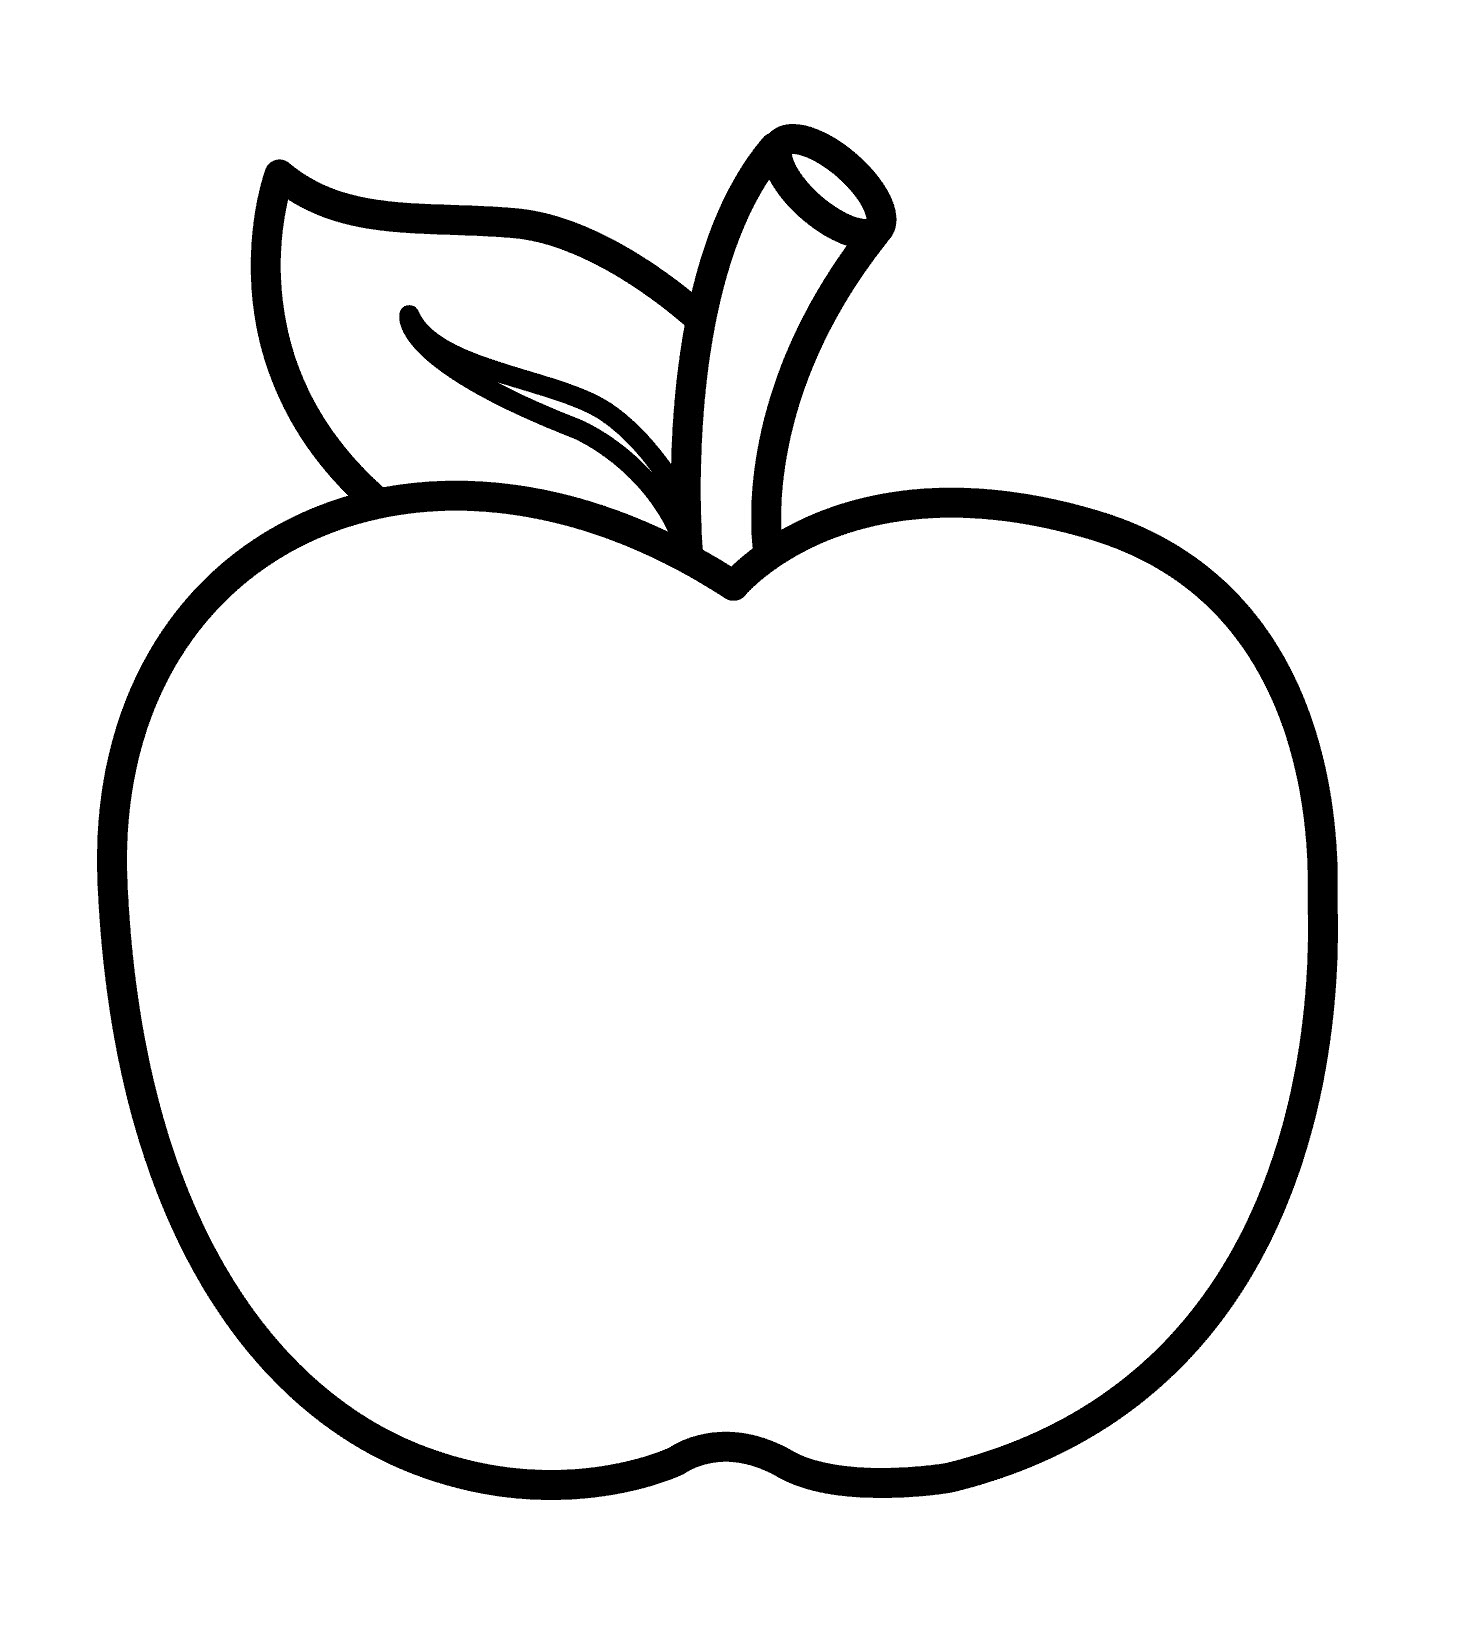 Vẽ quả táo  How to draw an apple  Kim Thành Cần Giờ  YouTube